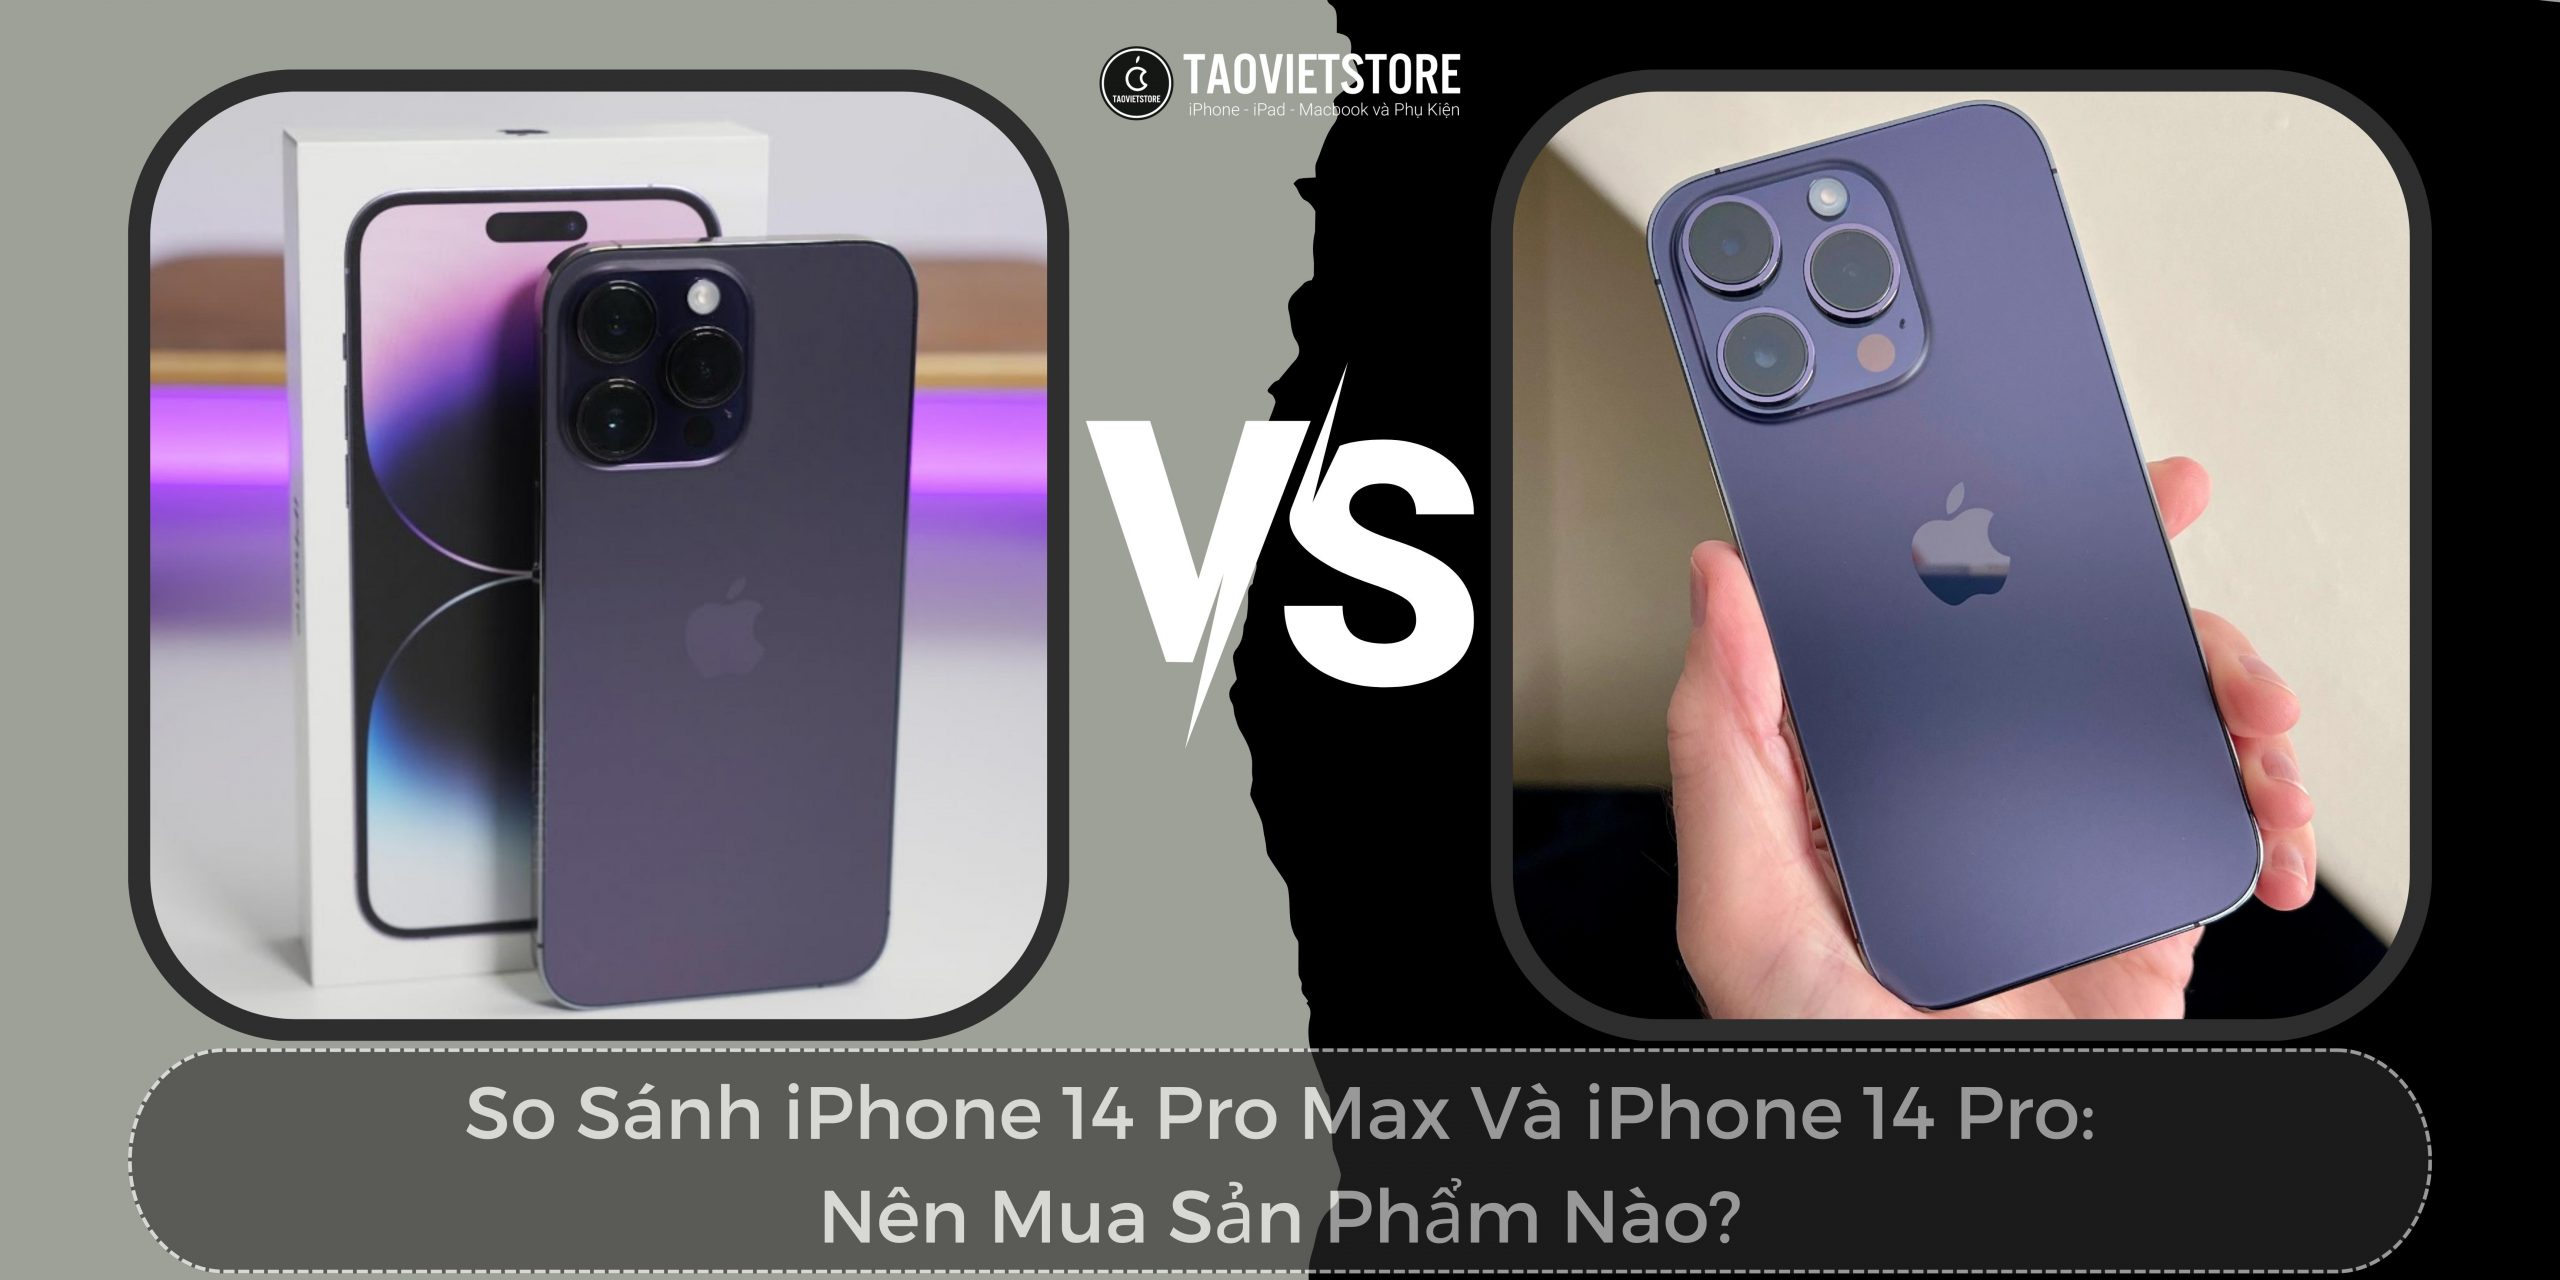 So Sánh iPhone 14 Pro Max Và iPhone 14 Pro: Nên Mua Sản Phẩm Nào?